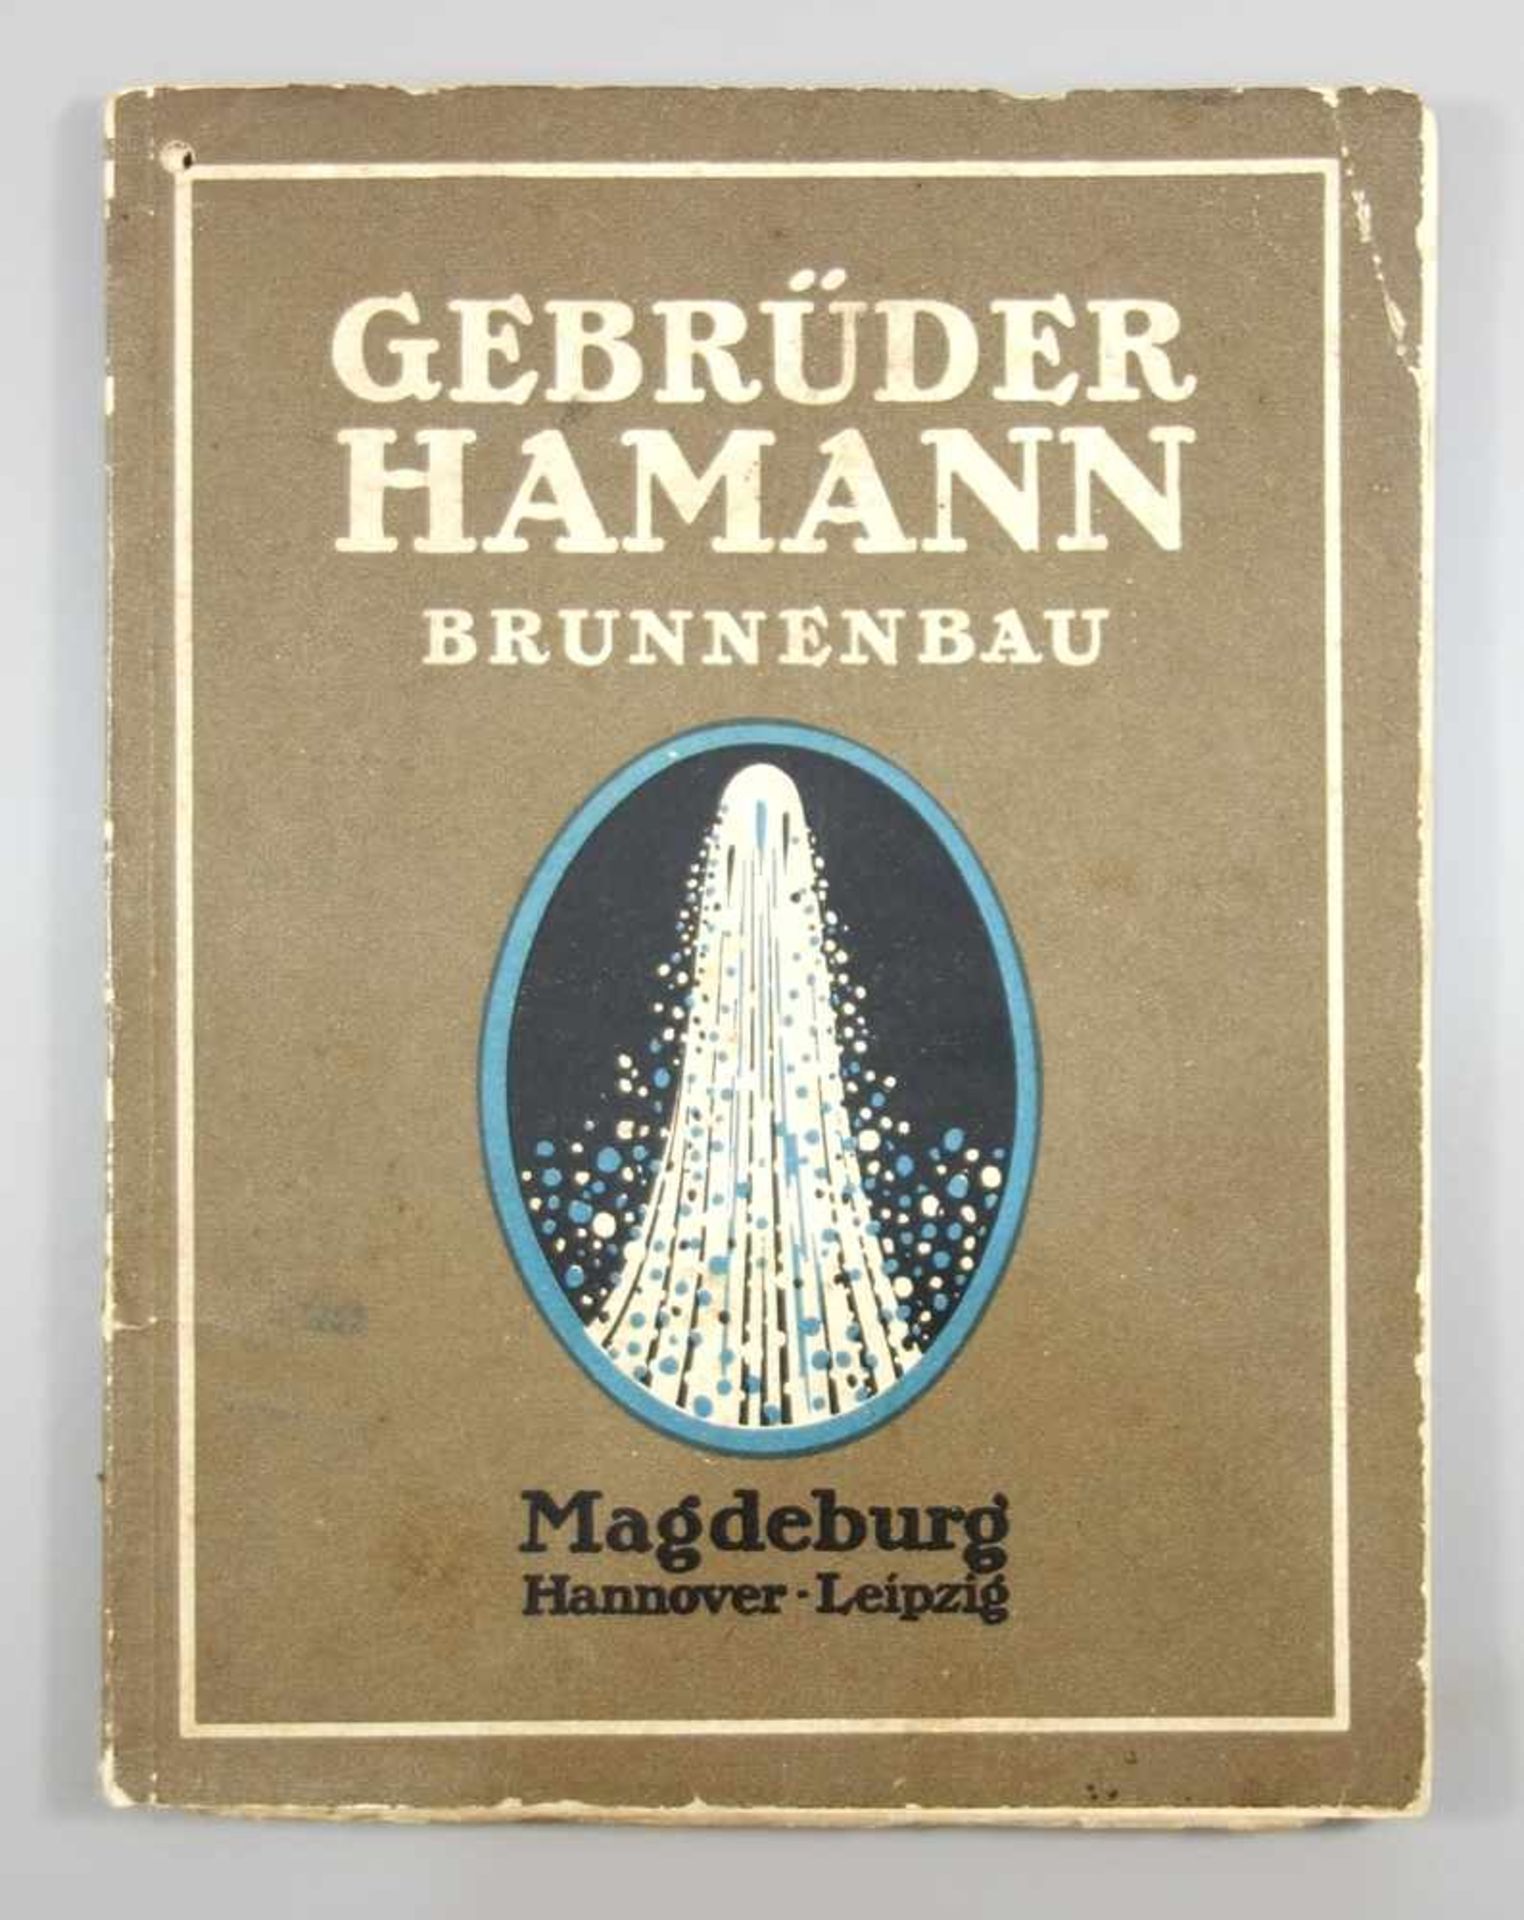 Illustrierte Referenzliste der Gebrüder Hamann, Magdeburg, Brunnenbau, um 1910, 46 S.,